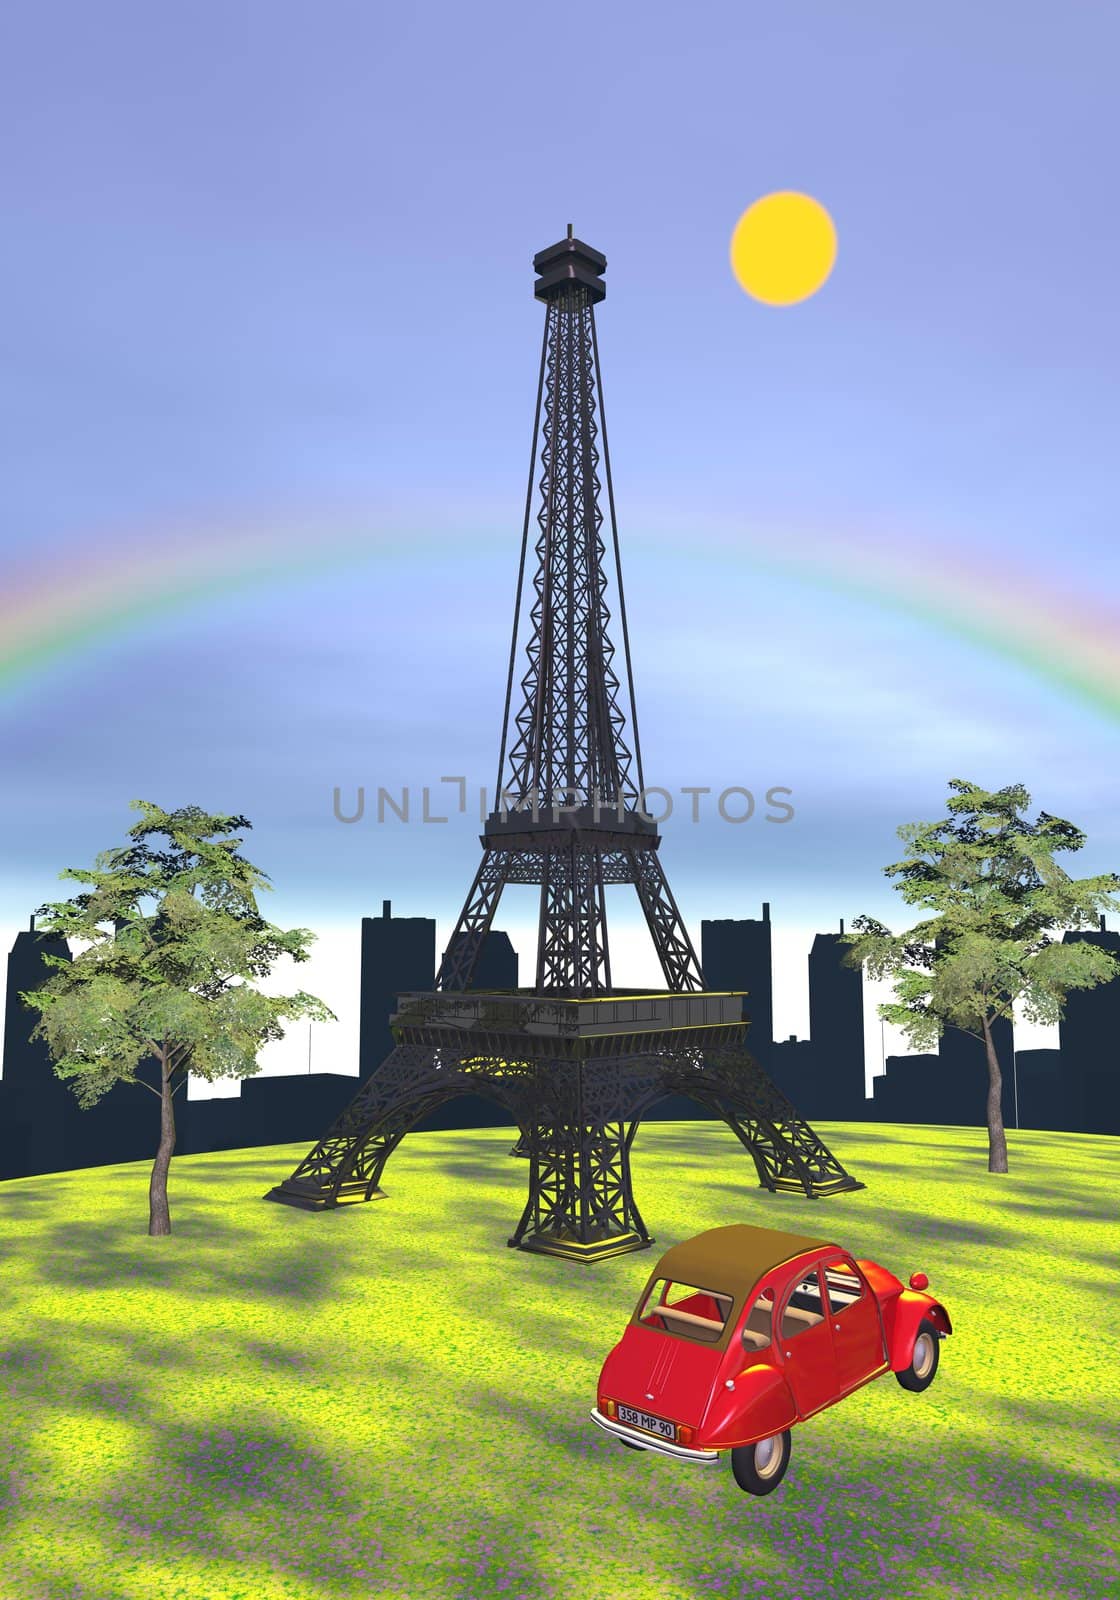 Eiffel tower, Paris, France - 3D render by Elenaphotos21